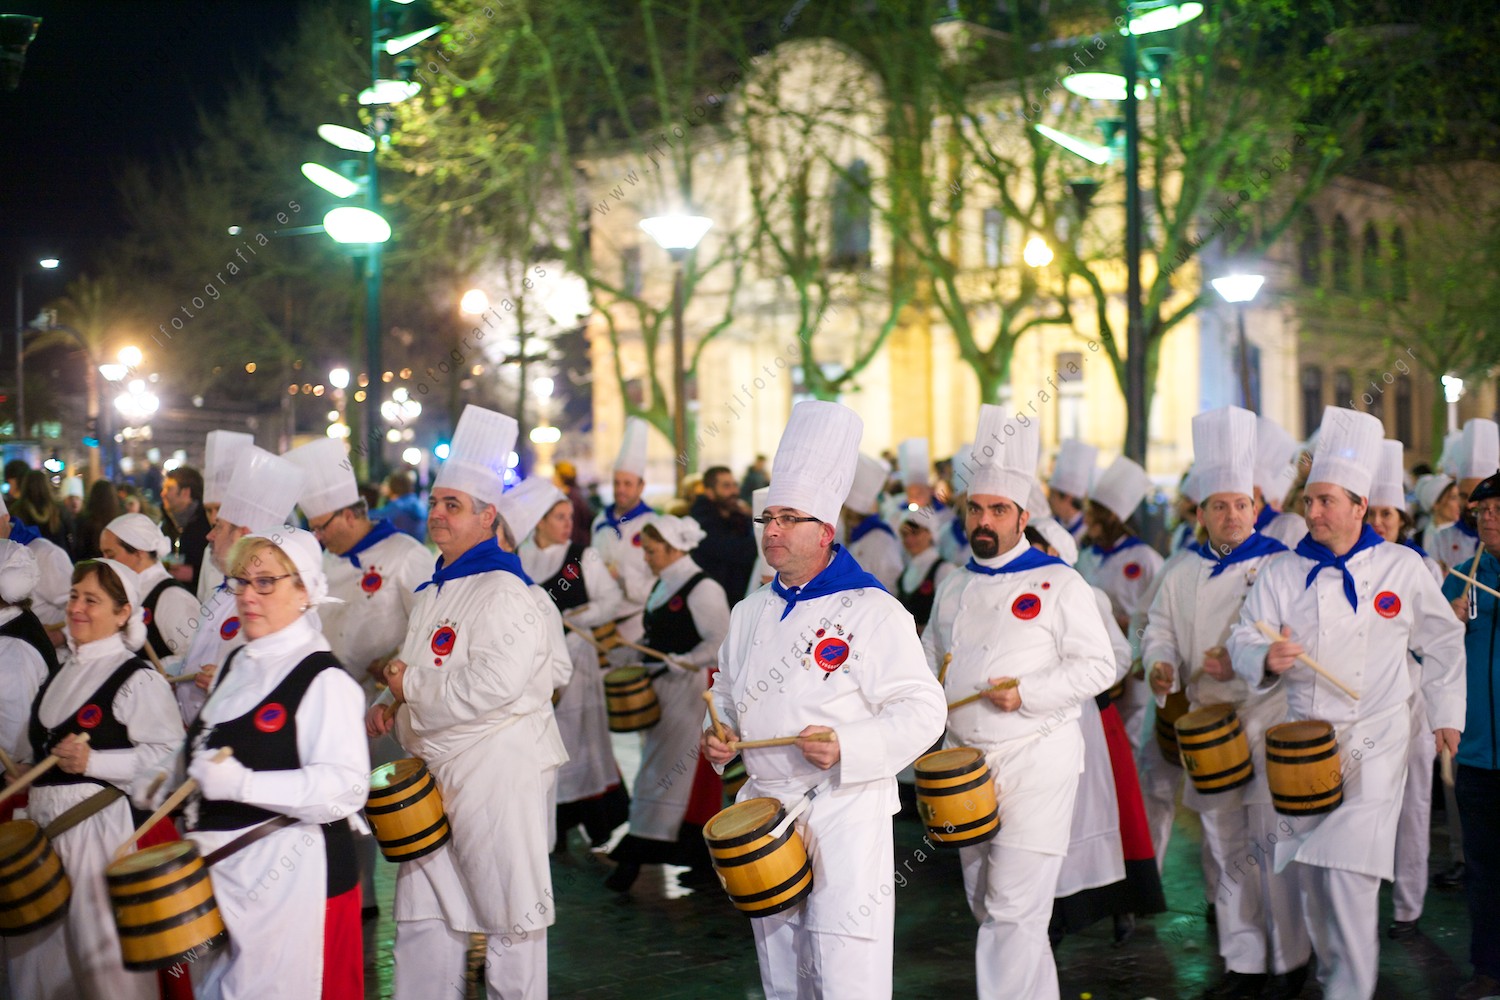 Las sociedades gastronómicas pasean por todo Donostia la fiesta de la tamborrada de San Sebastián.